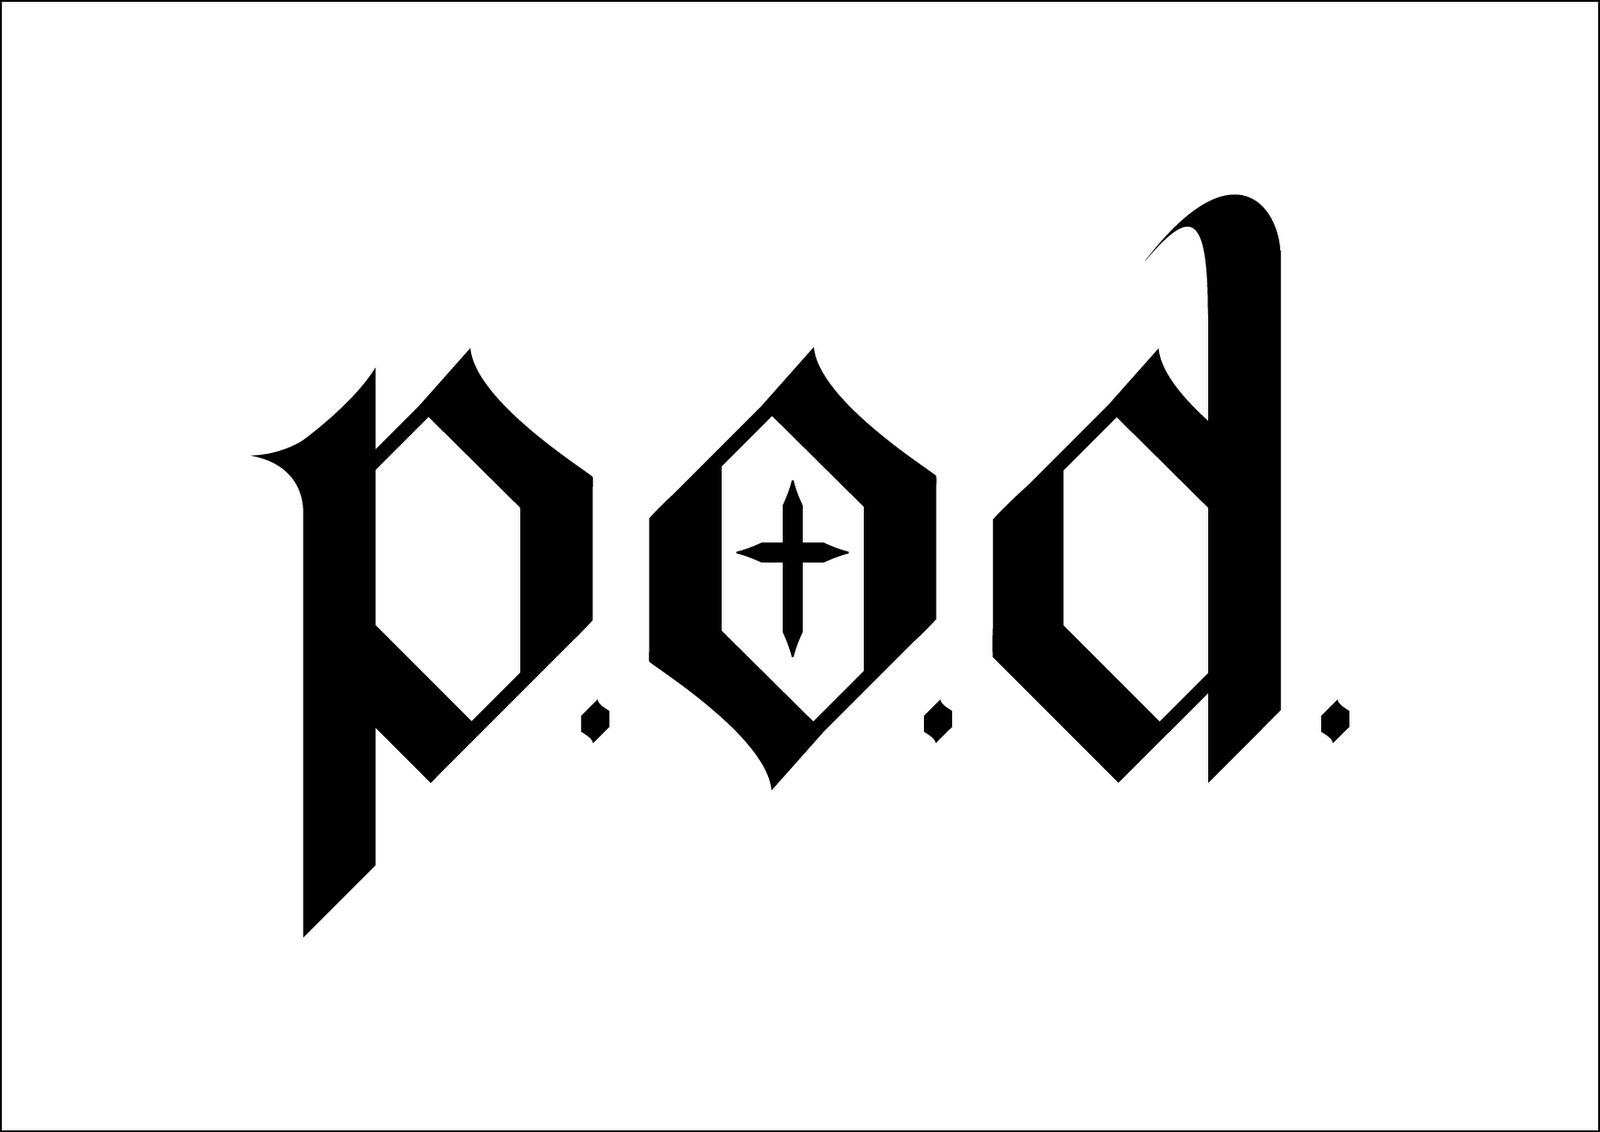 P.O.d. Logo - P.O.D. logo | Logos en 2019 | Logos de bandas, Bandas y Musica